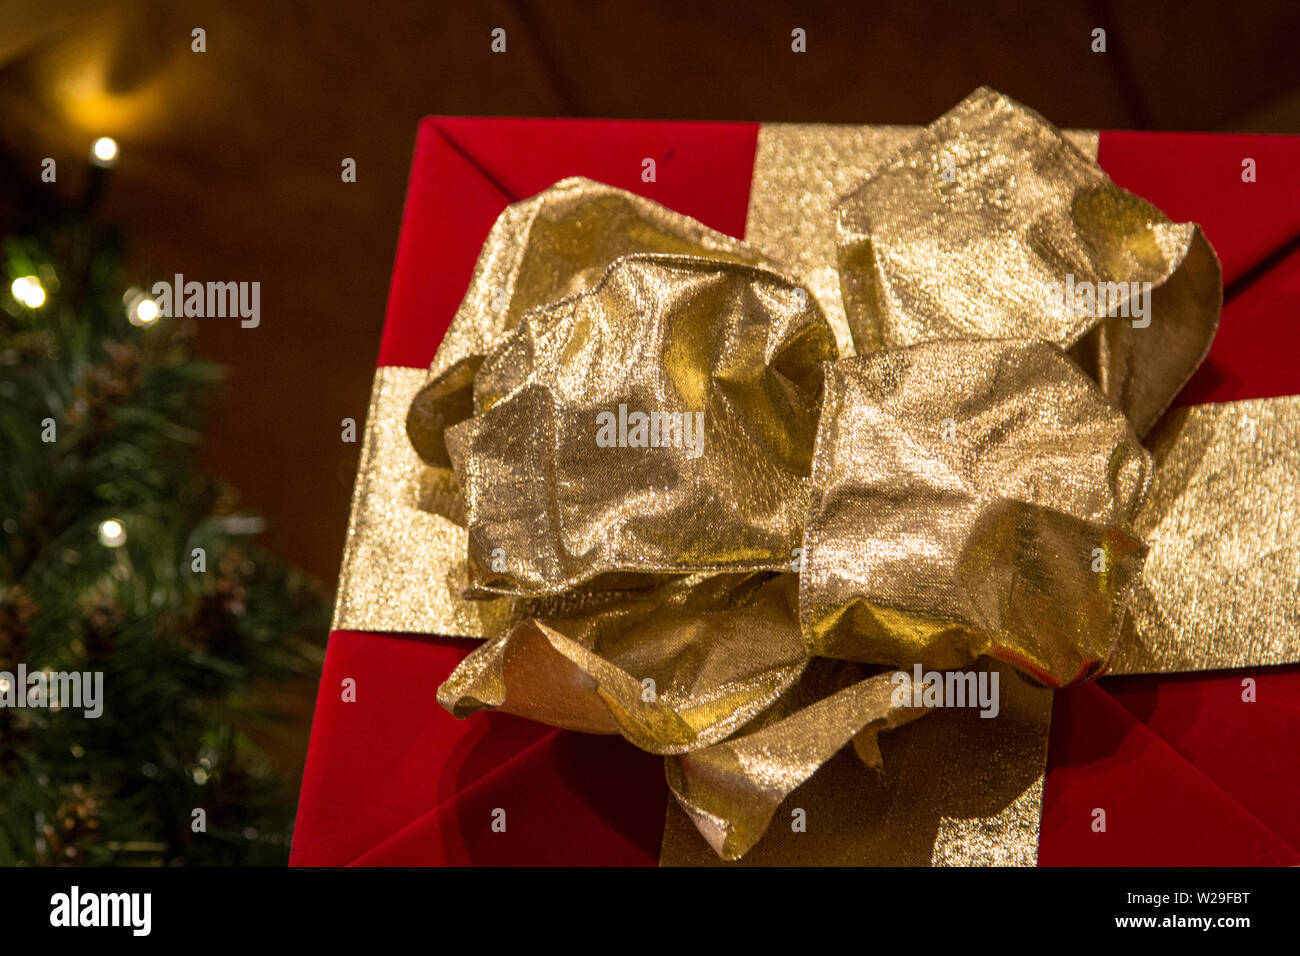 Shopping per il regalo di Natale perfetto. Avvolgere un regalo di Natale con la carta rossa e un ornato di prua in oro bianco con le luci di Natale in background Foto Stock